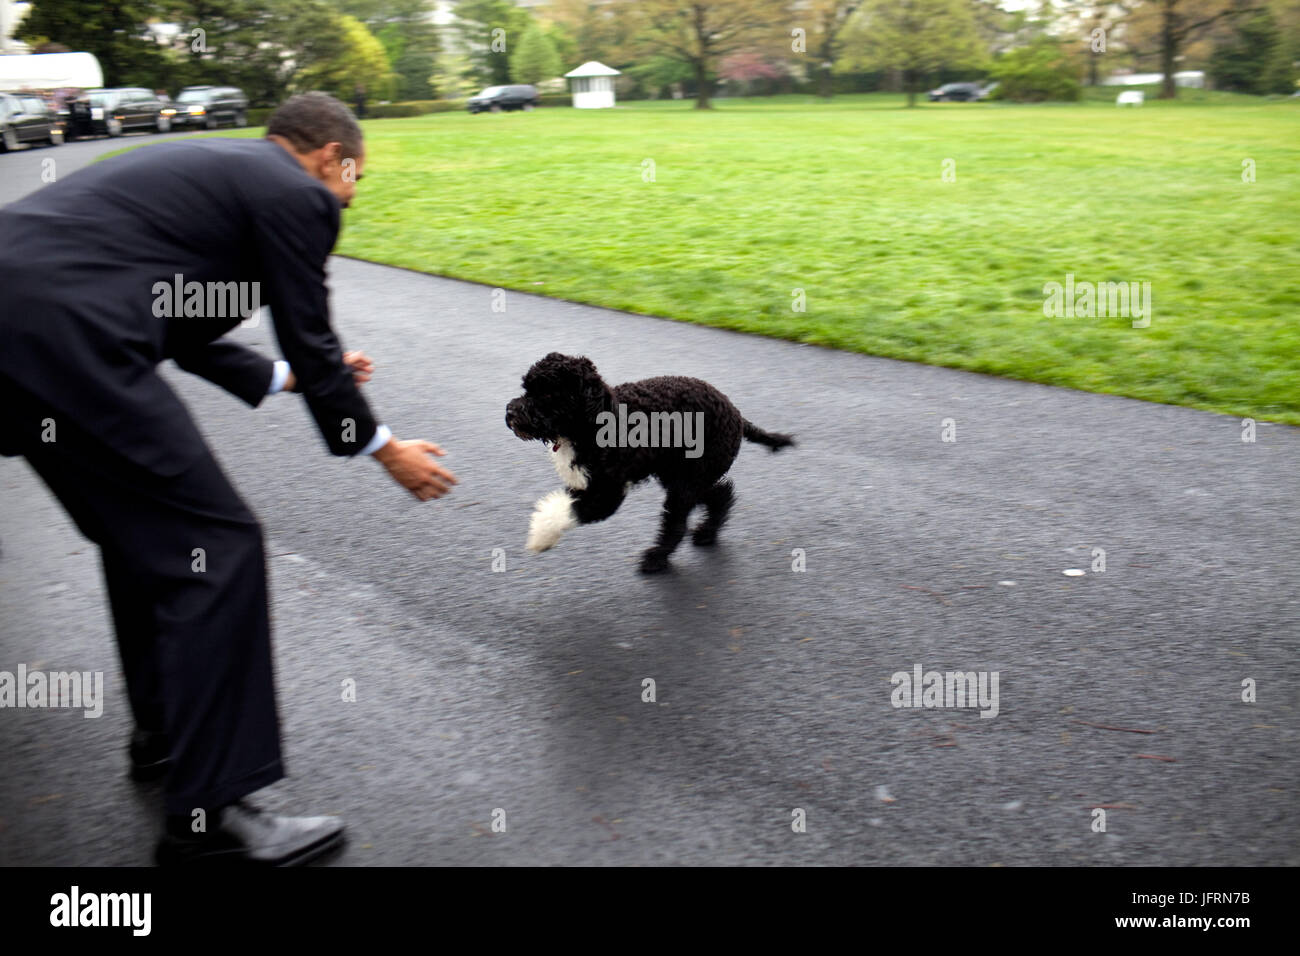 Le président Barack Obama joue avec leur chien 'Bo' 20 avril 2009, sur la pelouse Sud de la Maison Blanche. Photo Officiel de la Maison Blanche par Pete Souza Banque D'Images